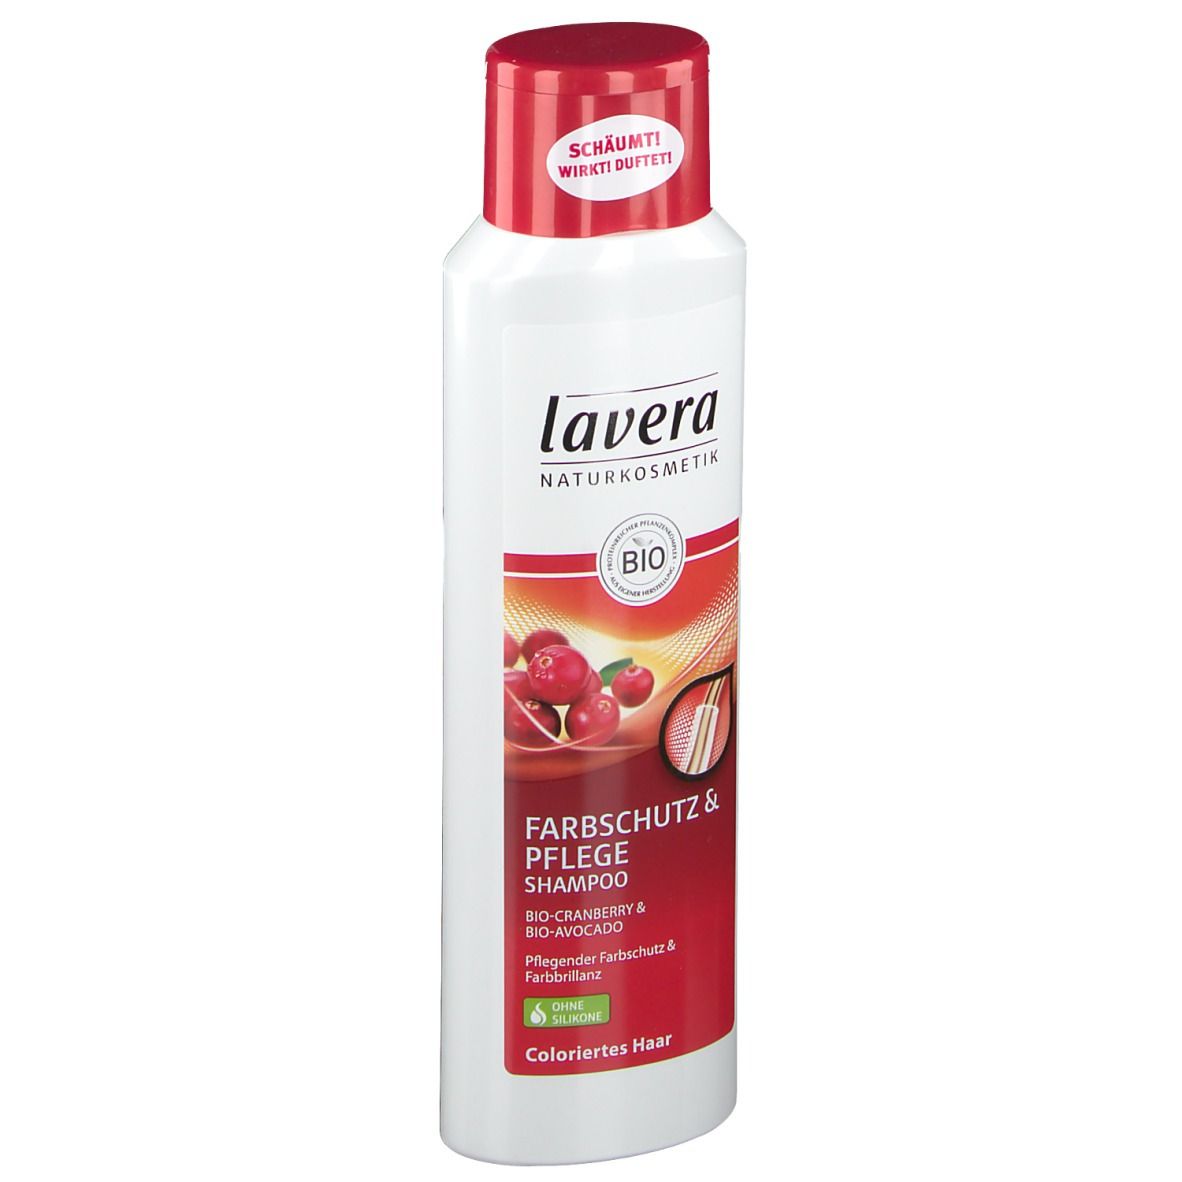 lavera Farbschutz & Pflege Shampoo